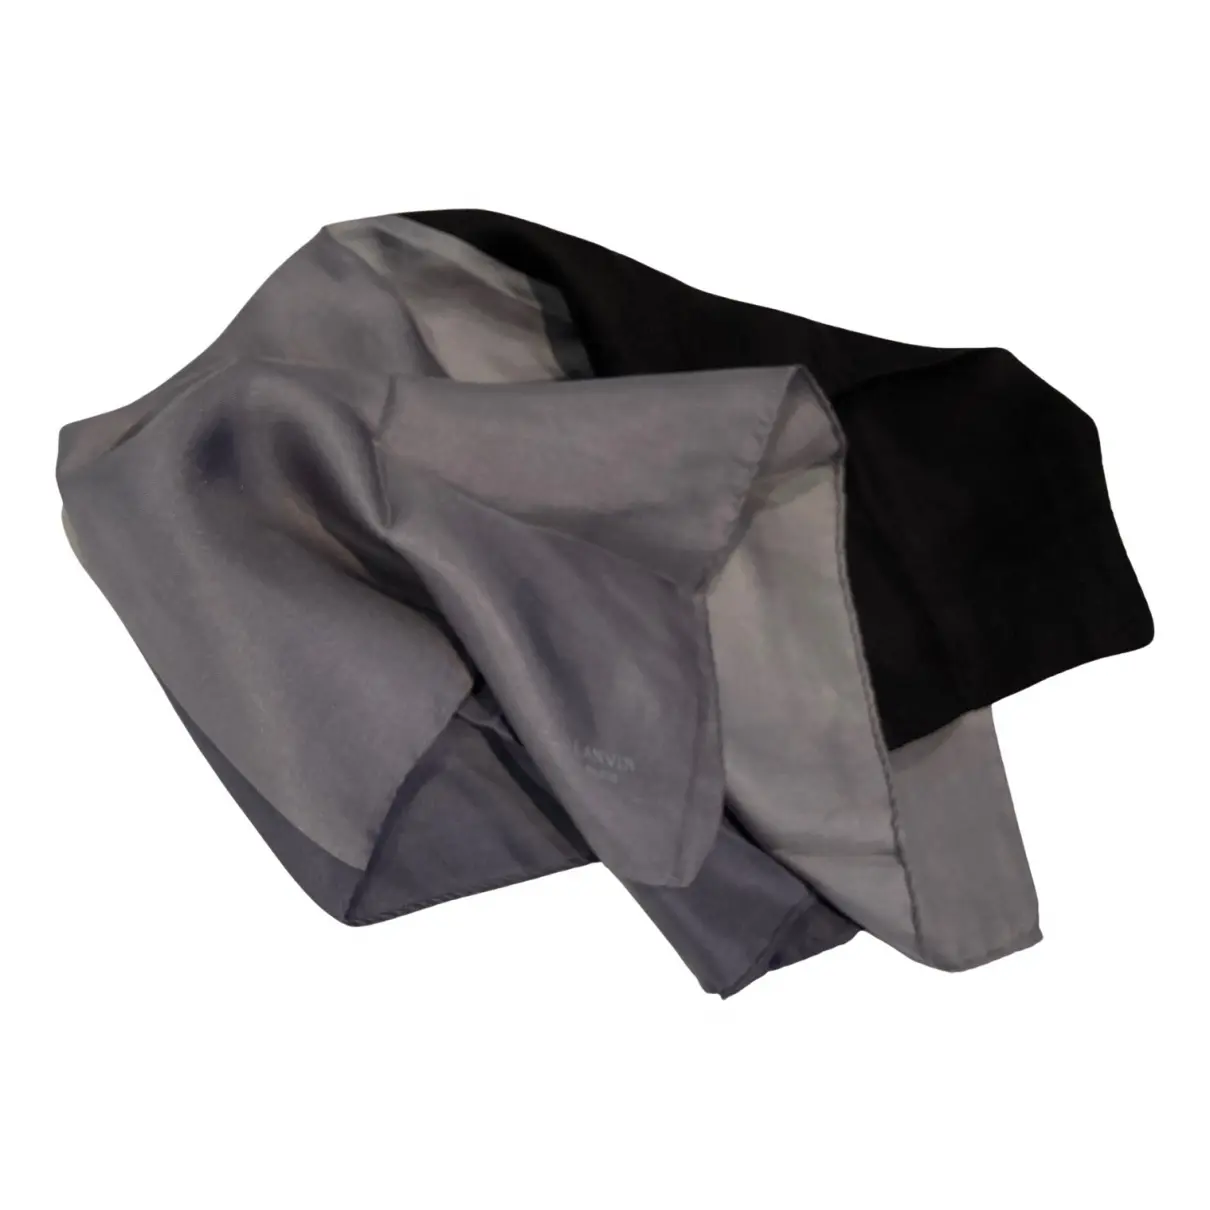 Silk handkerchief Lanvin - Vintage